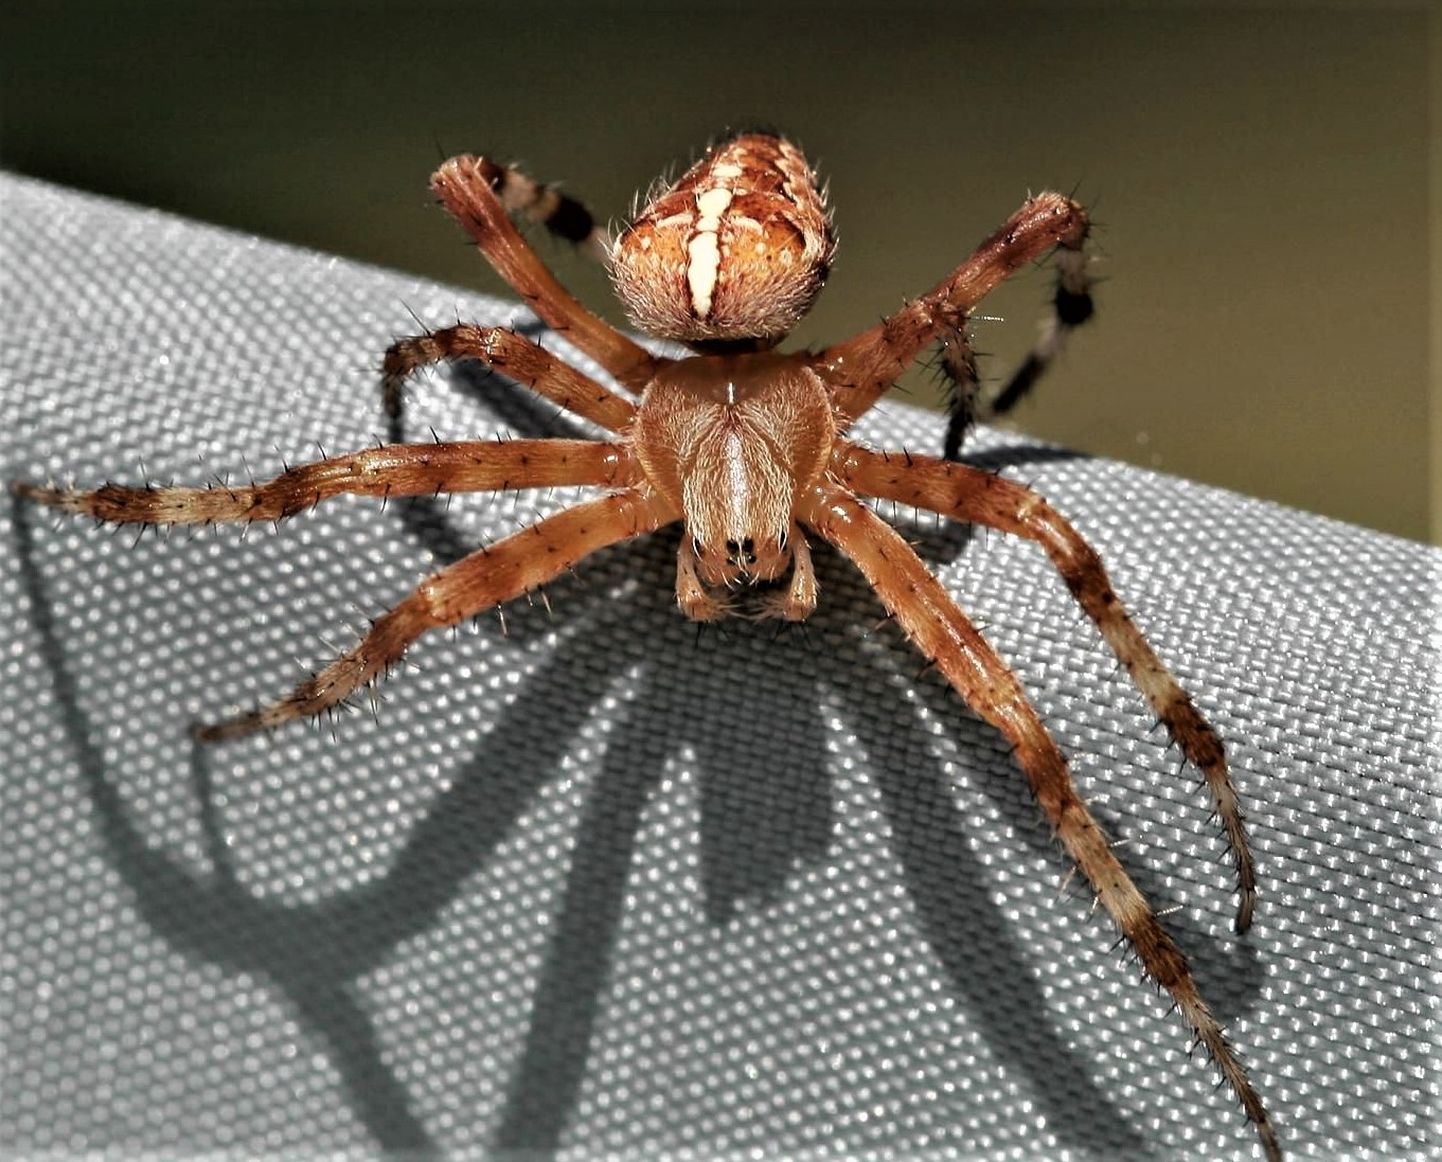 Боязнь пауков, или арахнофобия самая известная боязнь насекомых, и в этом случае вид любого восьминогого членистоногого вызывает сильную реакцию страха.